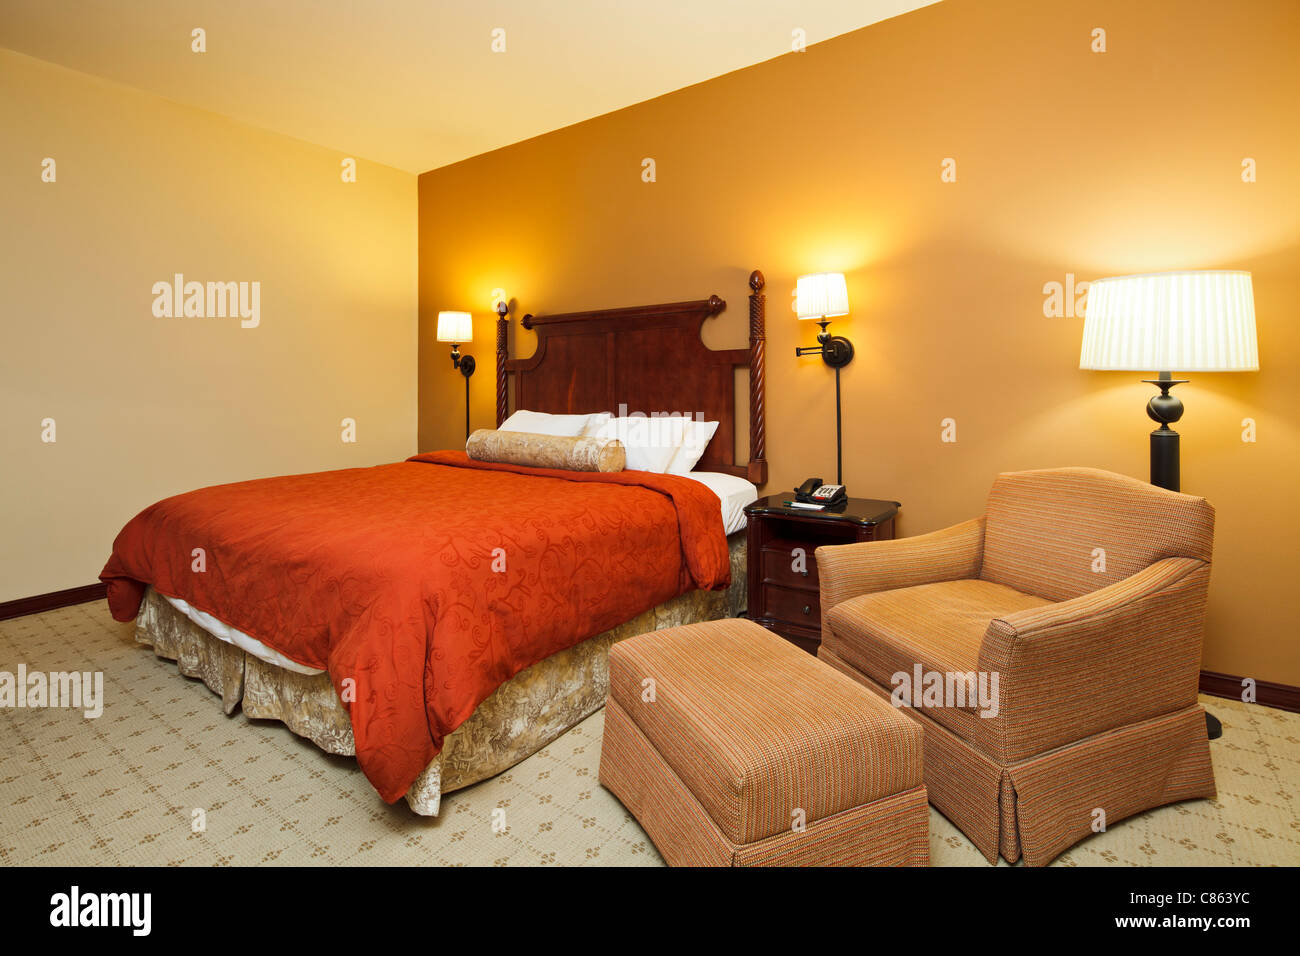 Bedroom interior Stock Photo